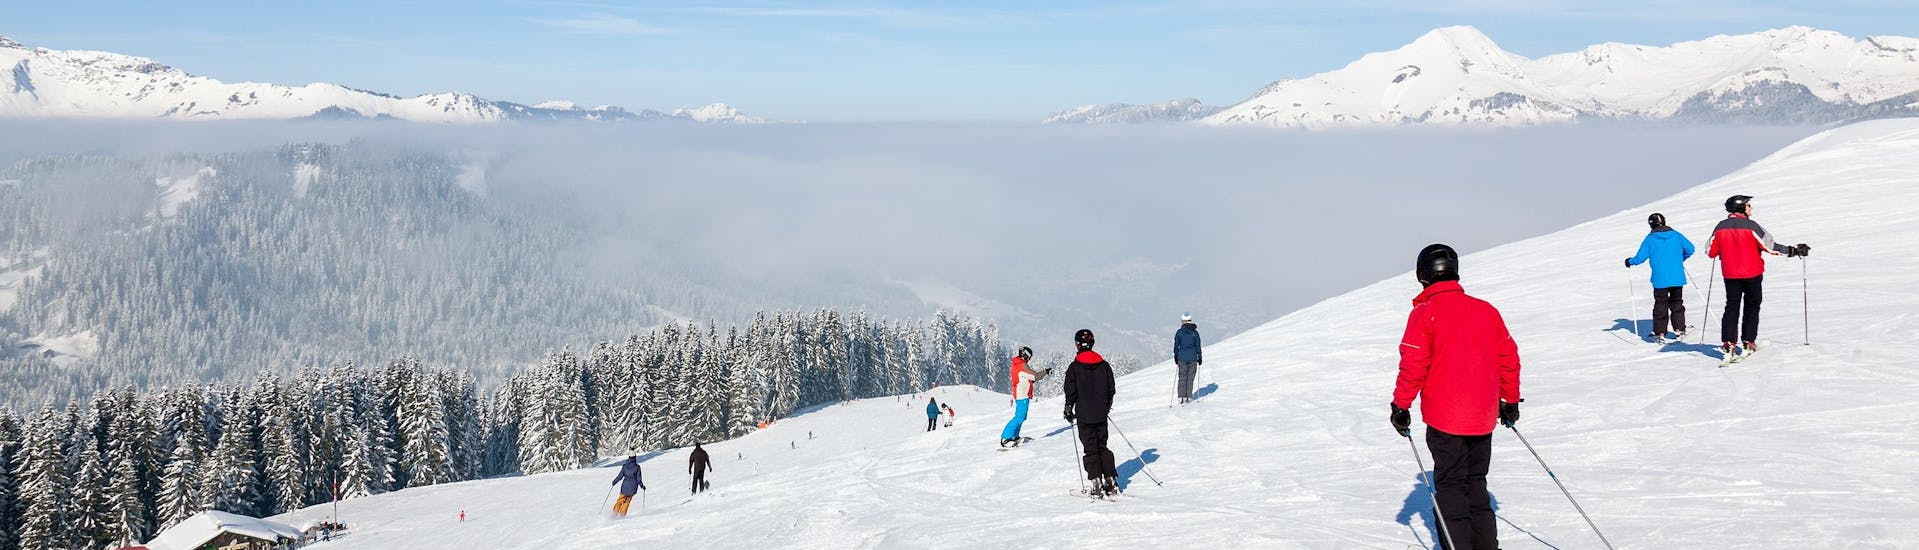 Plusieurs skieurs descendent une piste de ski dans la station de ski de Morzine, avec une vue magnifique sur les montagnes environnantes accessible à tous ceux qui réservent des cours de ski avec les écoles de ski locales. 